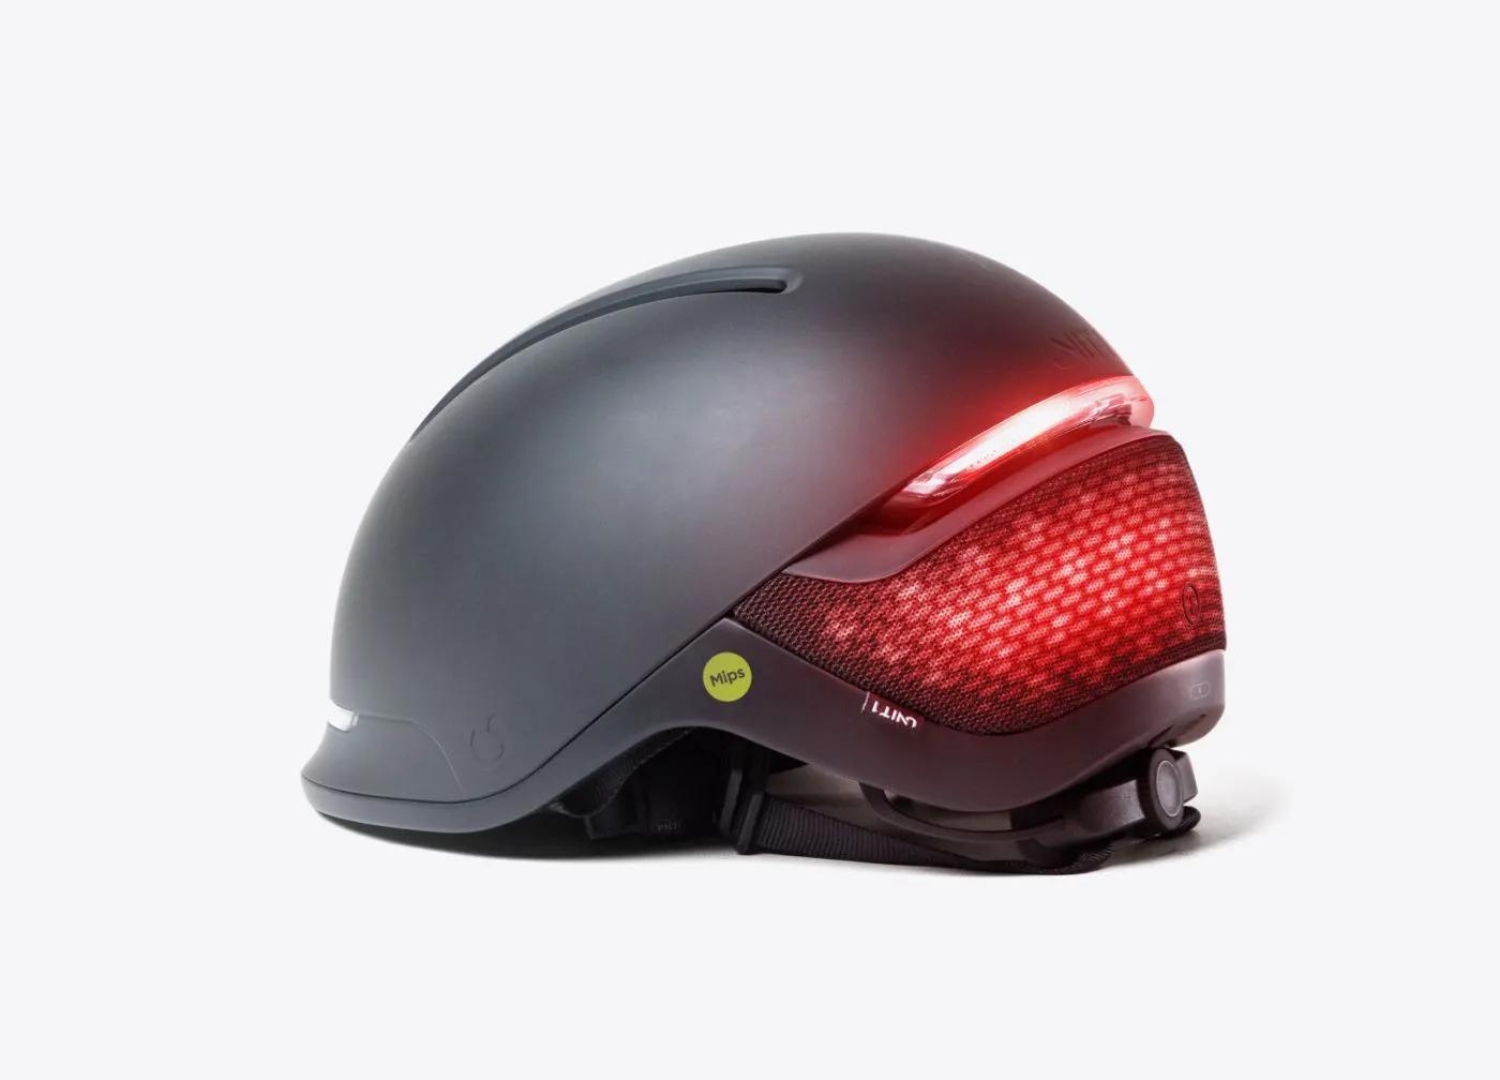 Faro Smart Helmet by Unit 1